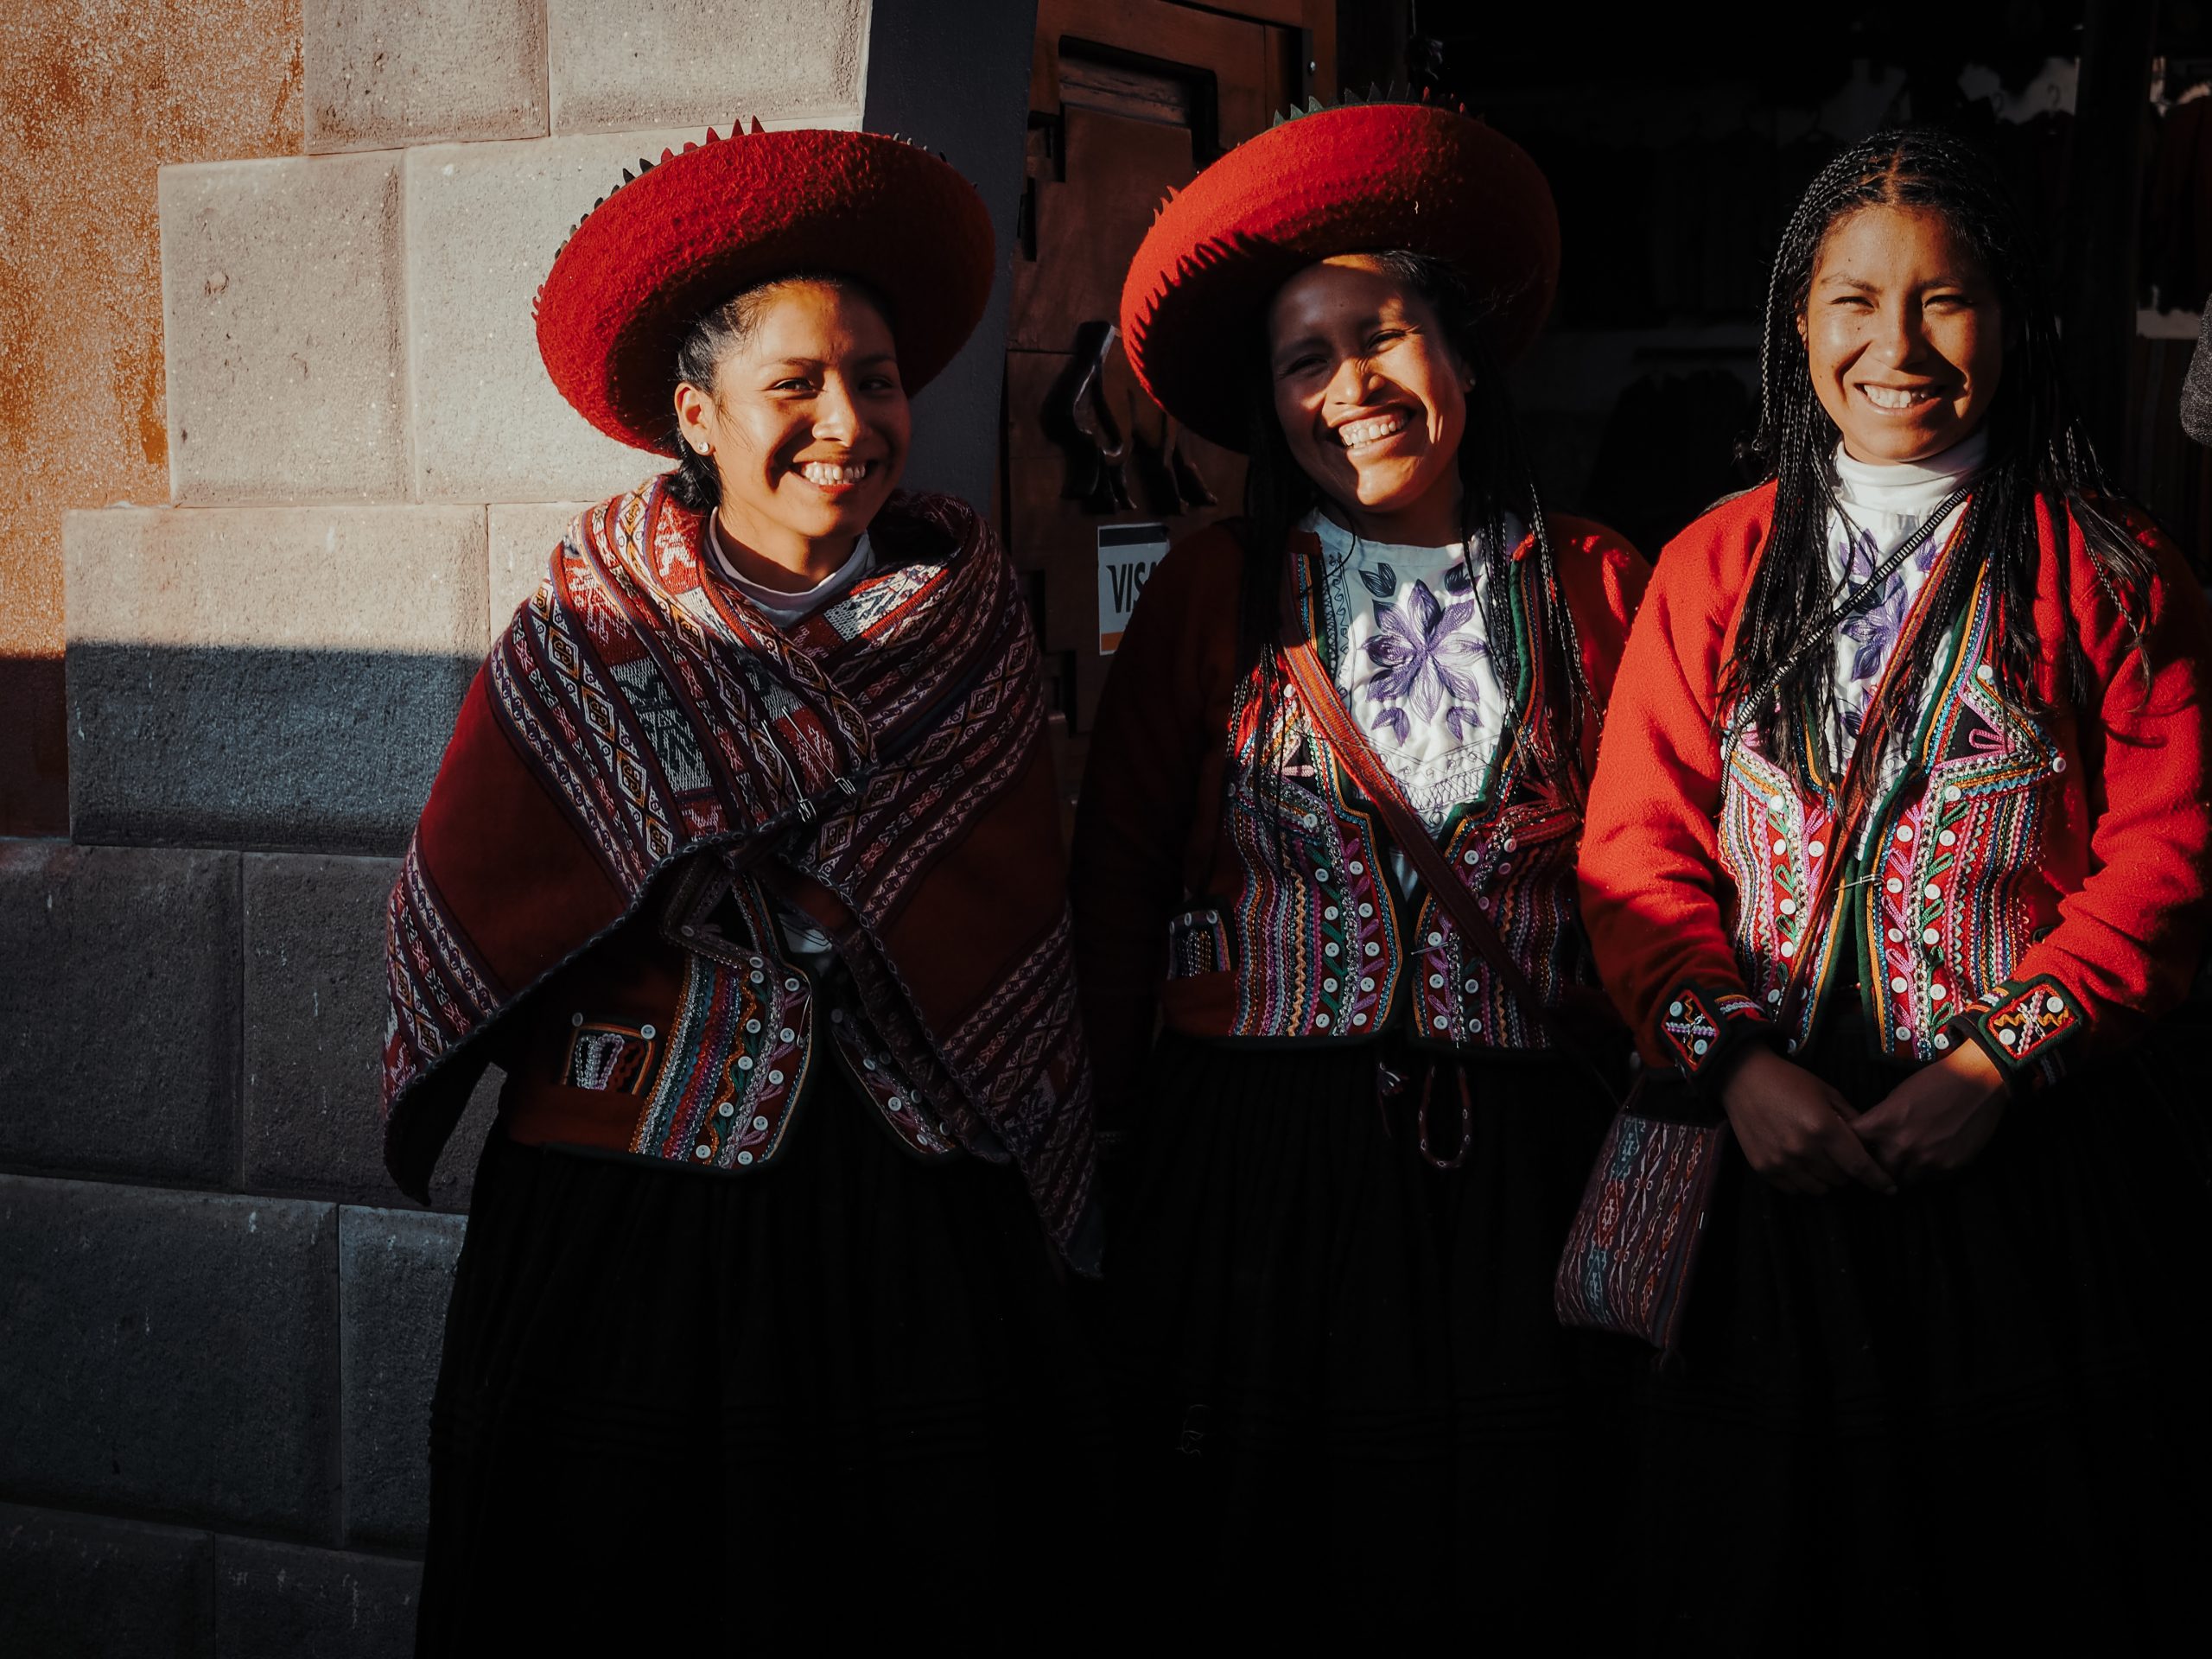 Frauen aus Peru mit bunten Kleidern